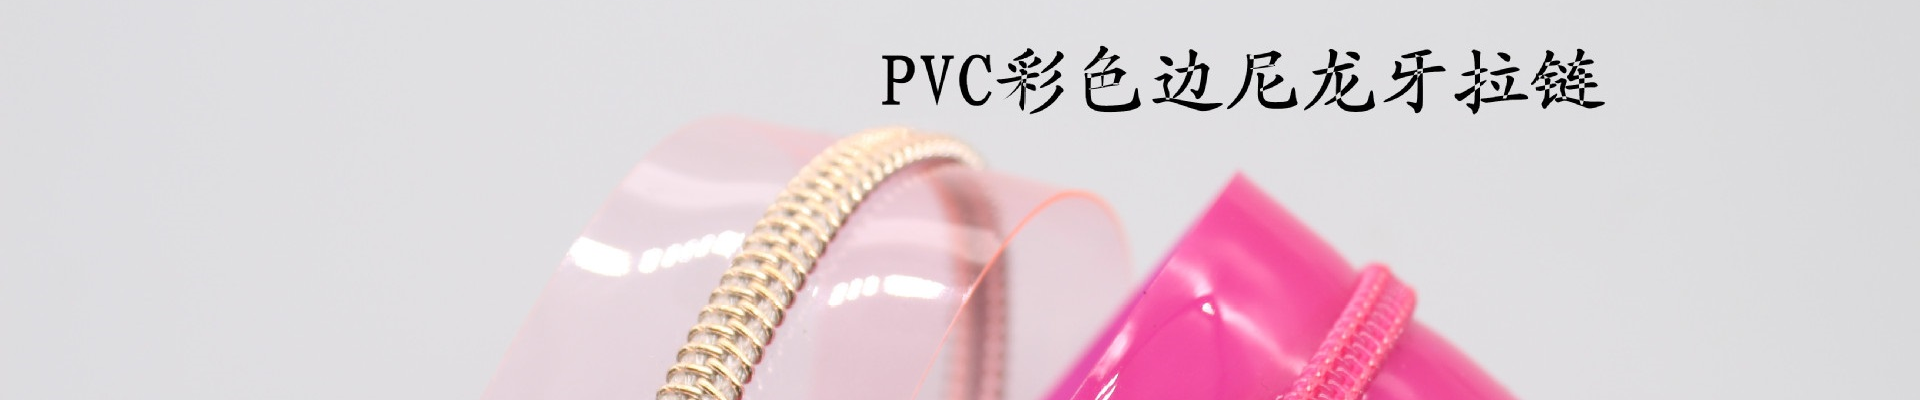 红顺叶-PVC拉链